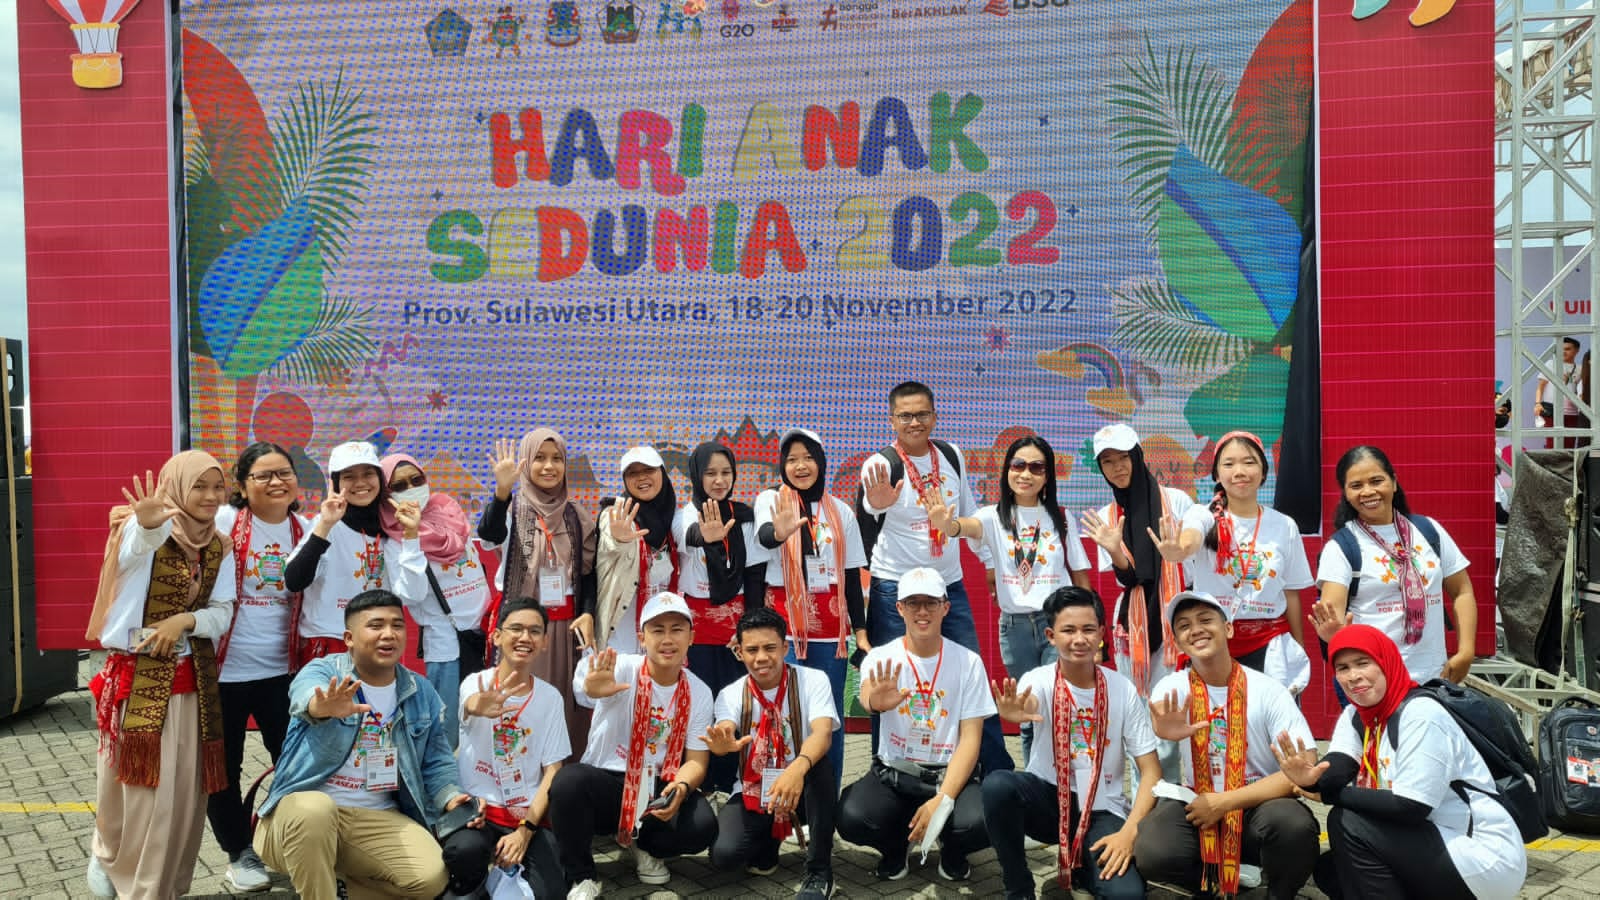 Perwakilan Forum Anak Kabupaten Sanggau bersama Delegasi Forum Anak Provinsi Kalimantan Barat Mengikuti Kegiatan Perayaan Hari Anak Sedunia di Provinsi Sulawesi Utara